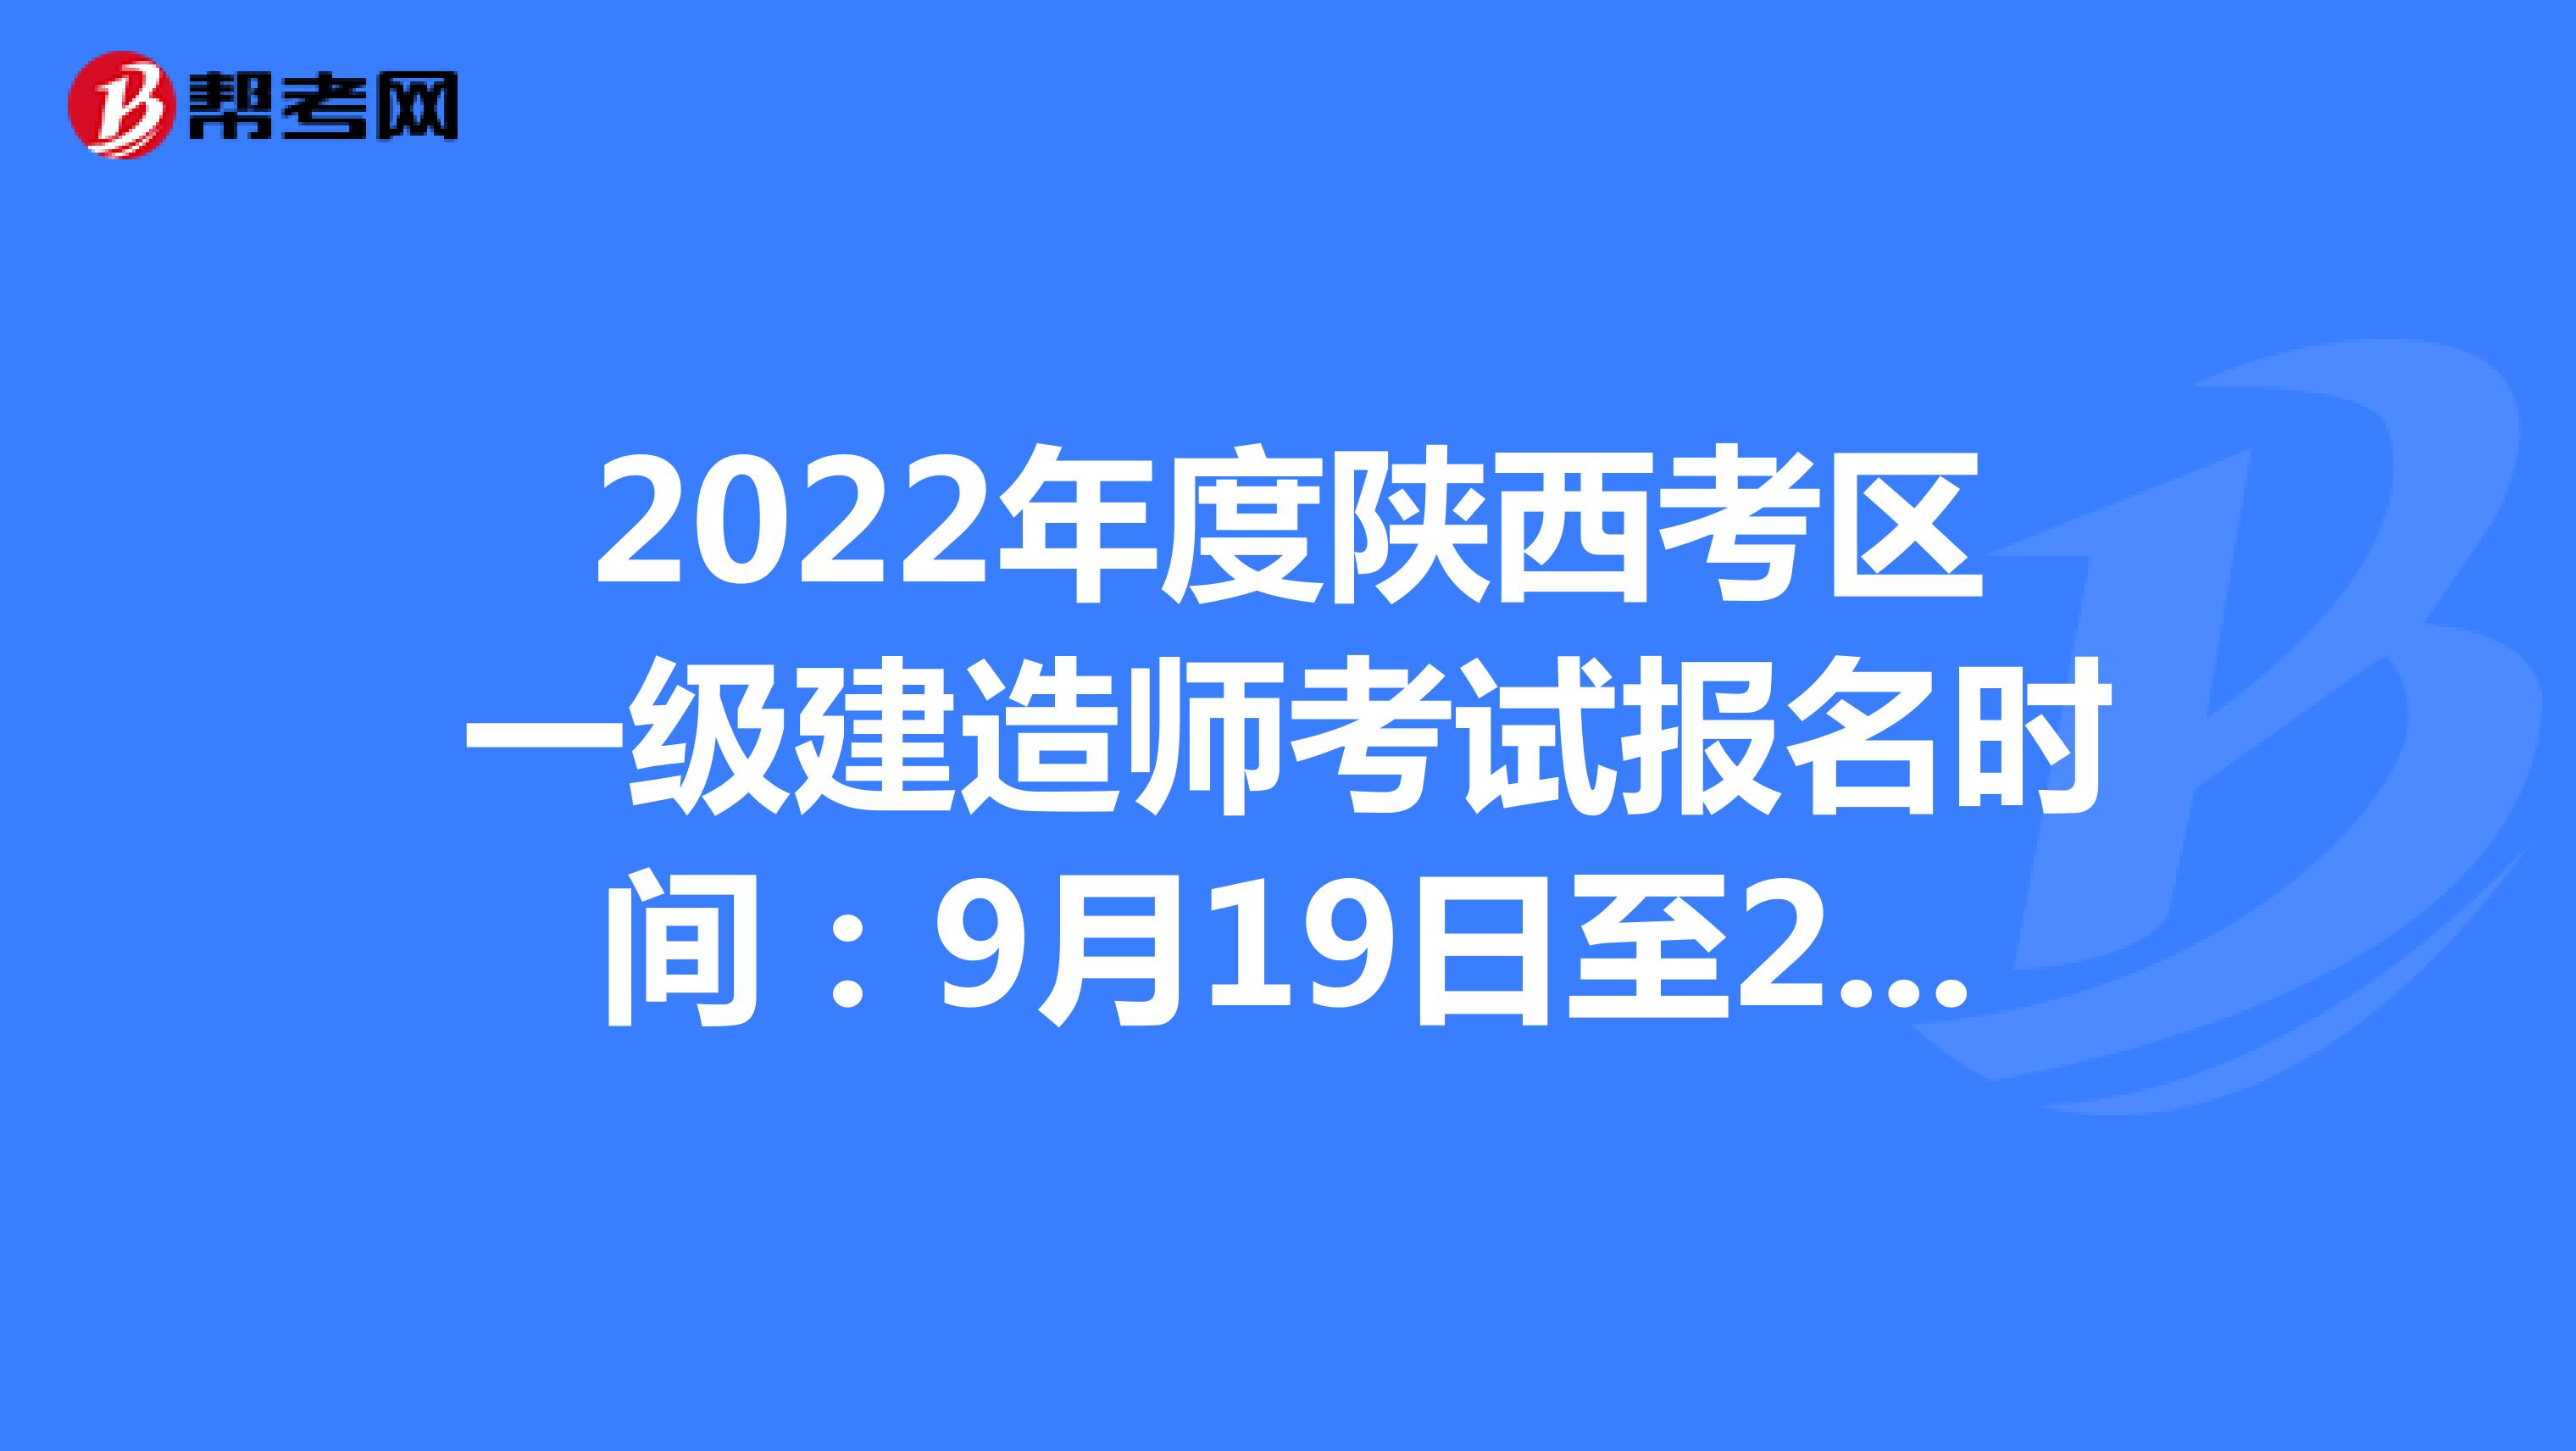 2022年度陕西考区一级建造师考试报名时间：9月19日至26日17:00